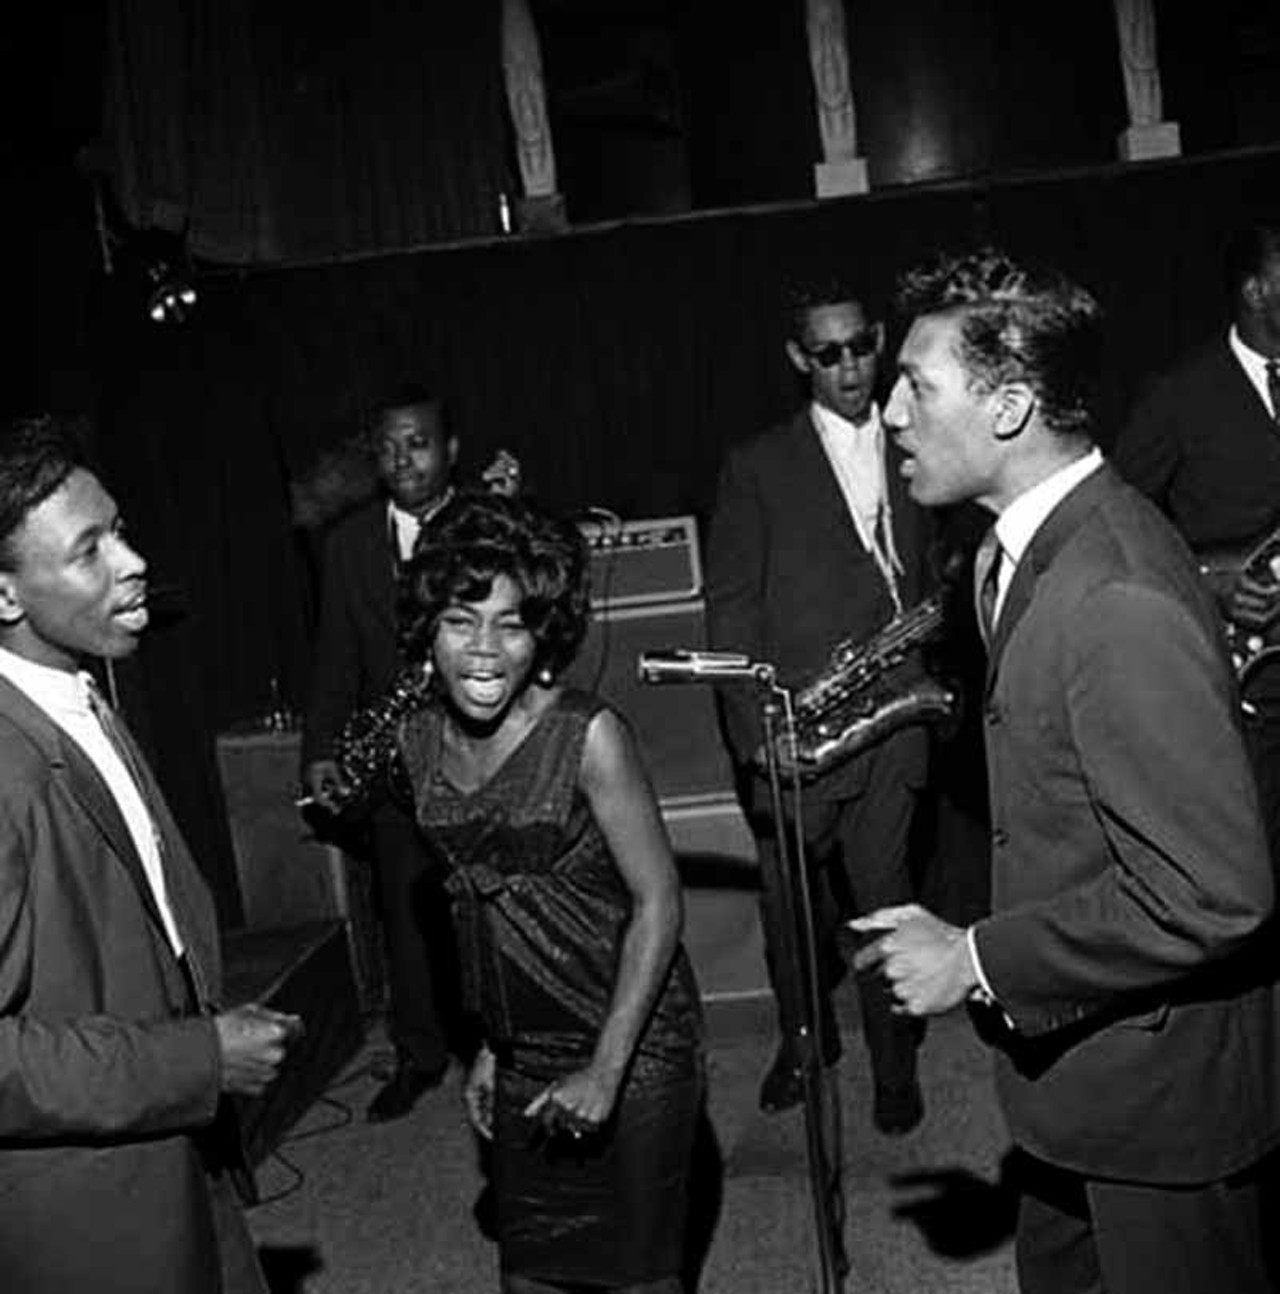 The Bennie Sharp Band with Jessie, in 1964.